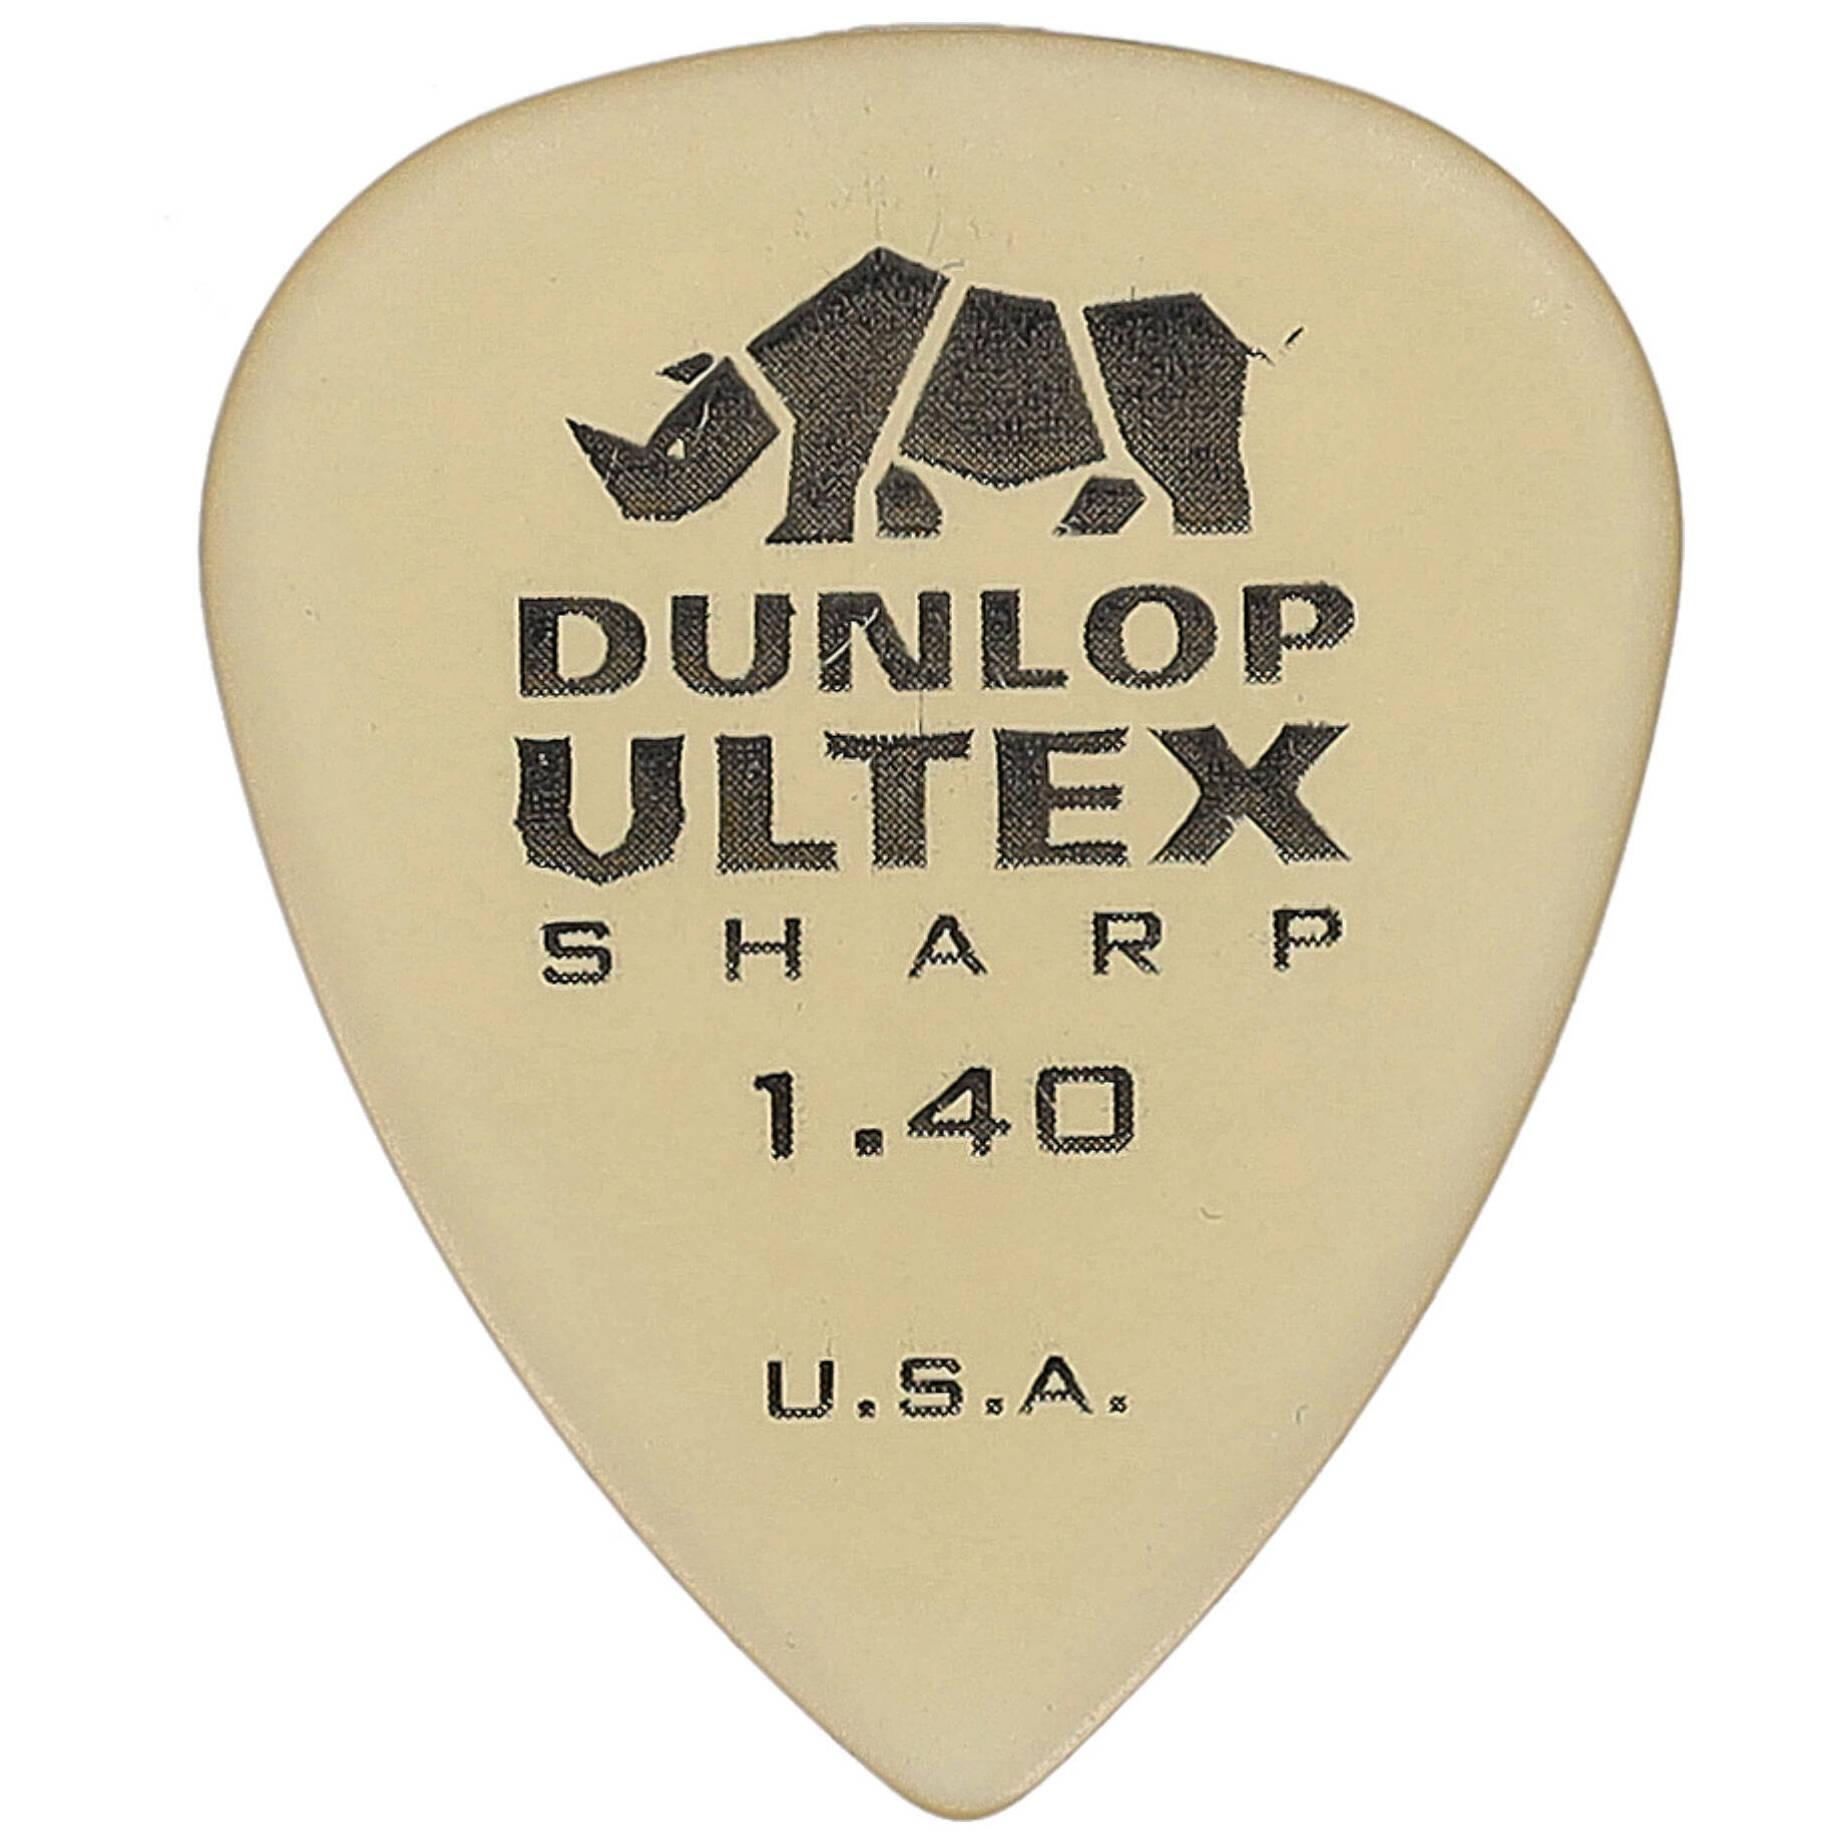 Dunlop Ultex Sharp 1.40